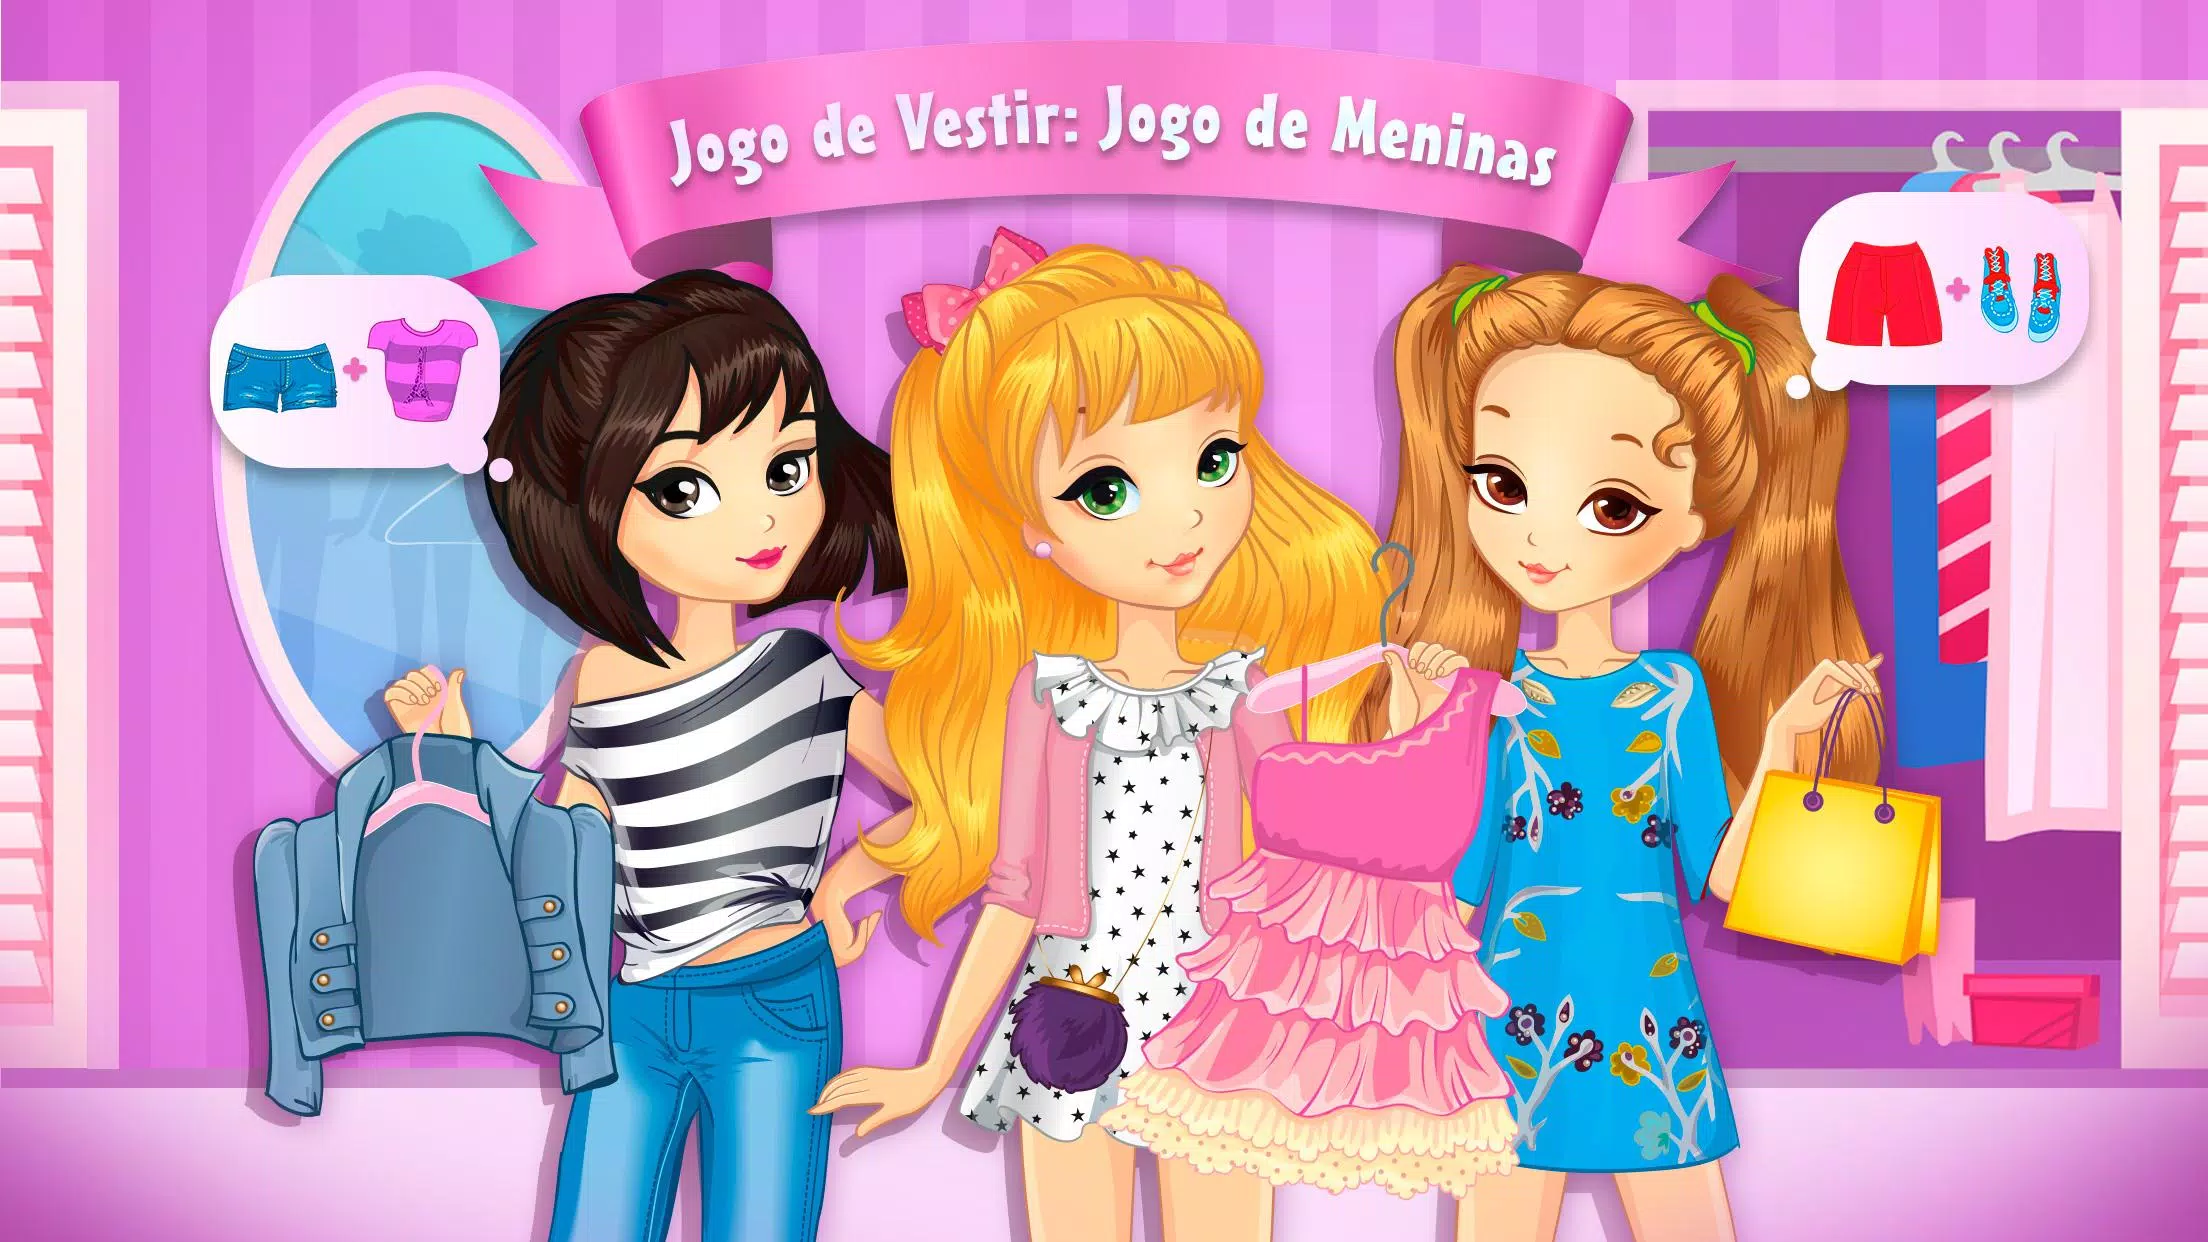 Download do APK de Jogo de Vestir: Jogo de Meninas para Android